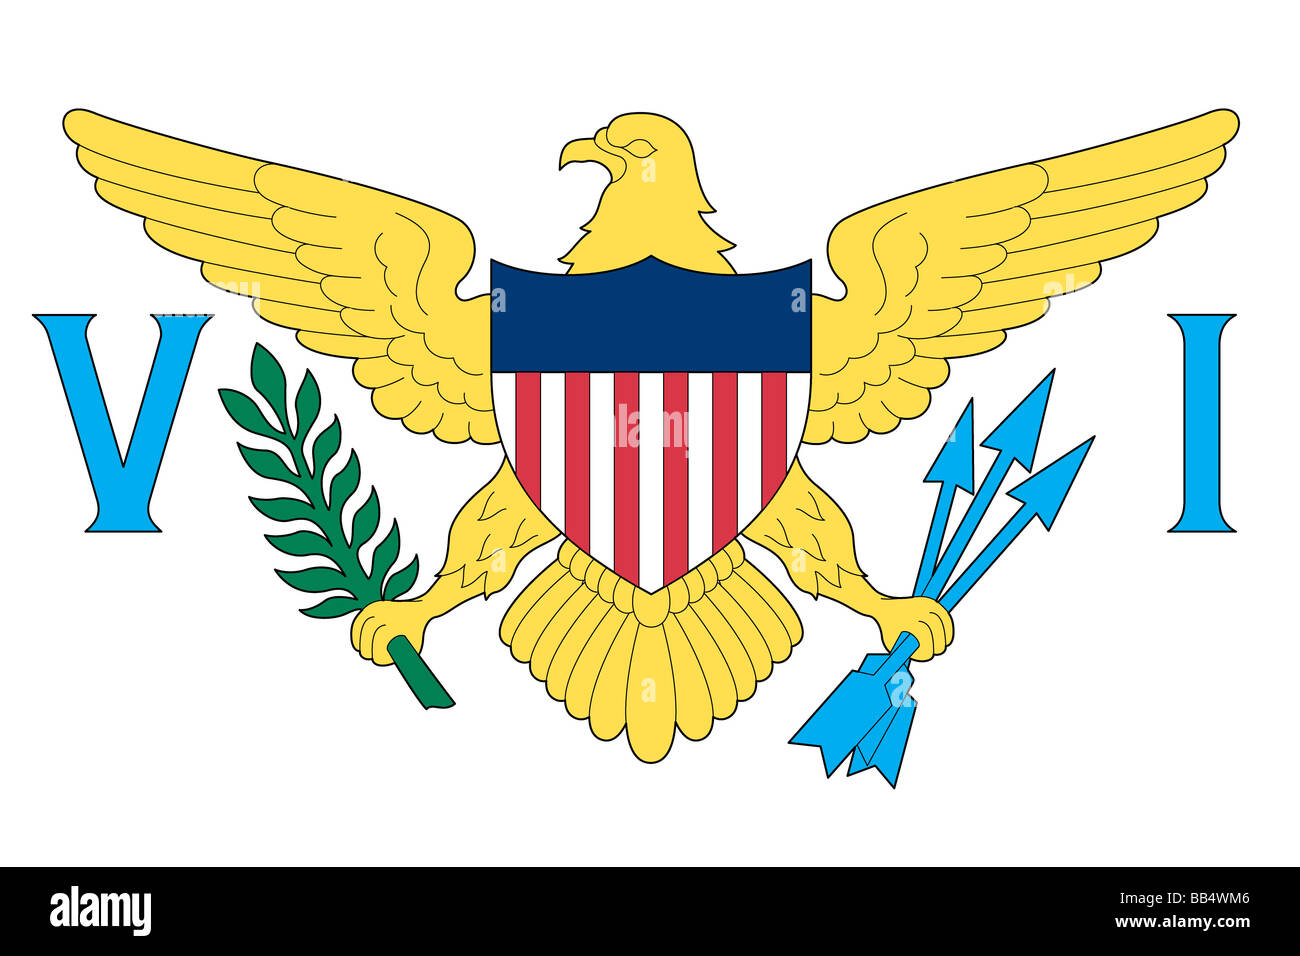 Flagge der US Virgin Islands, eine nicht rechtsfähige Insel Territorium der Vereinigten Staaten befindet sich in der Karibik. Stockfoto